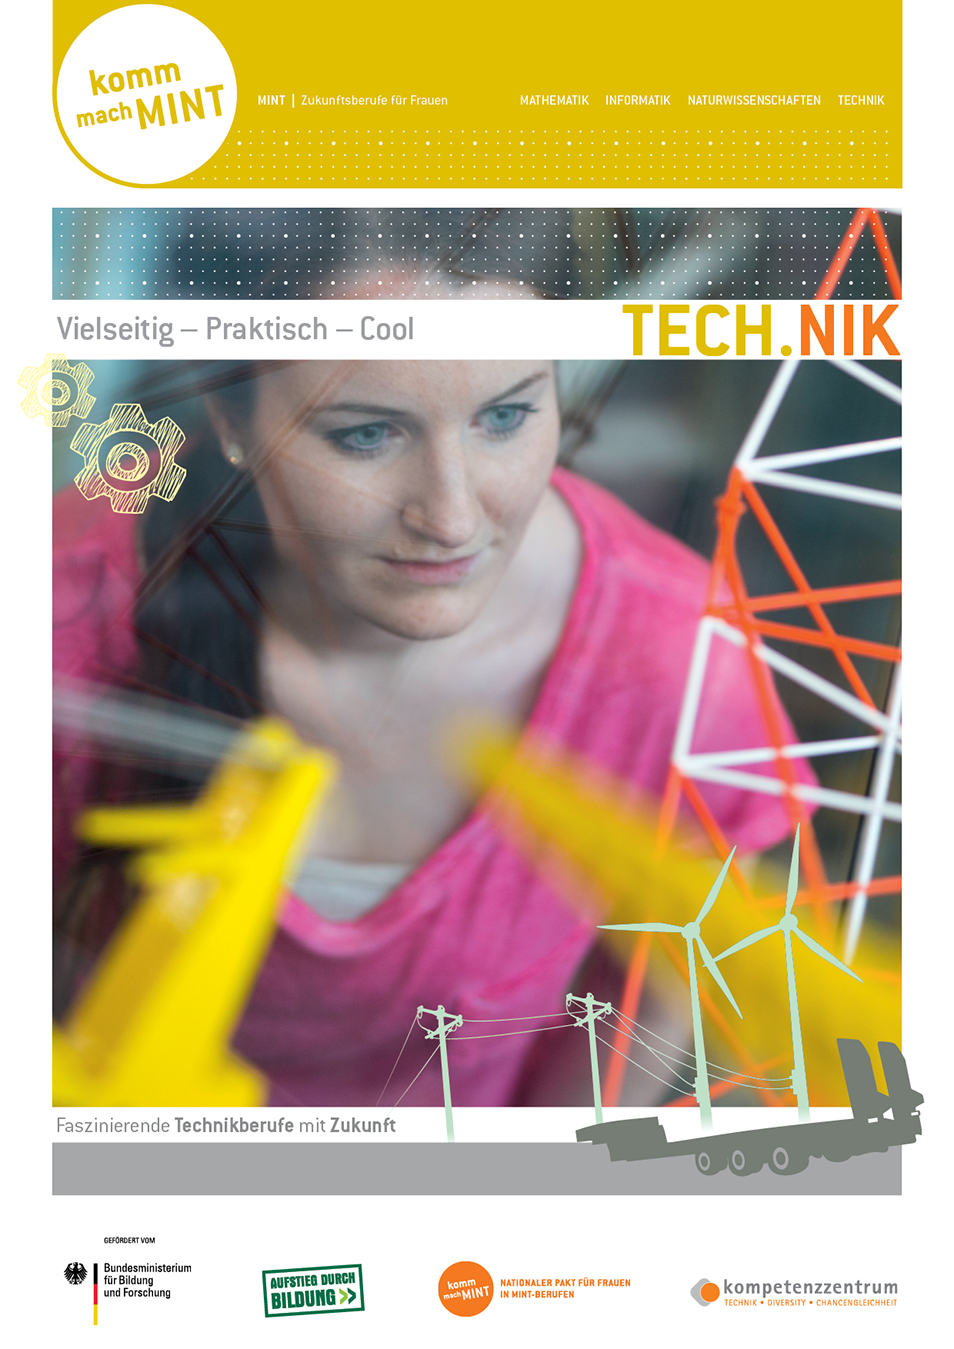 Titelbild der Technikbroschüre